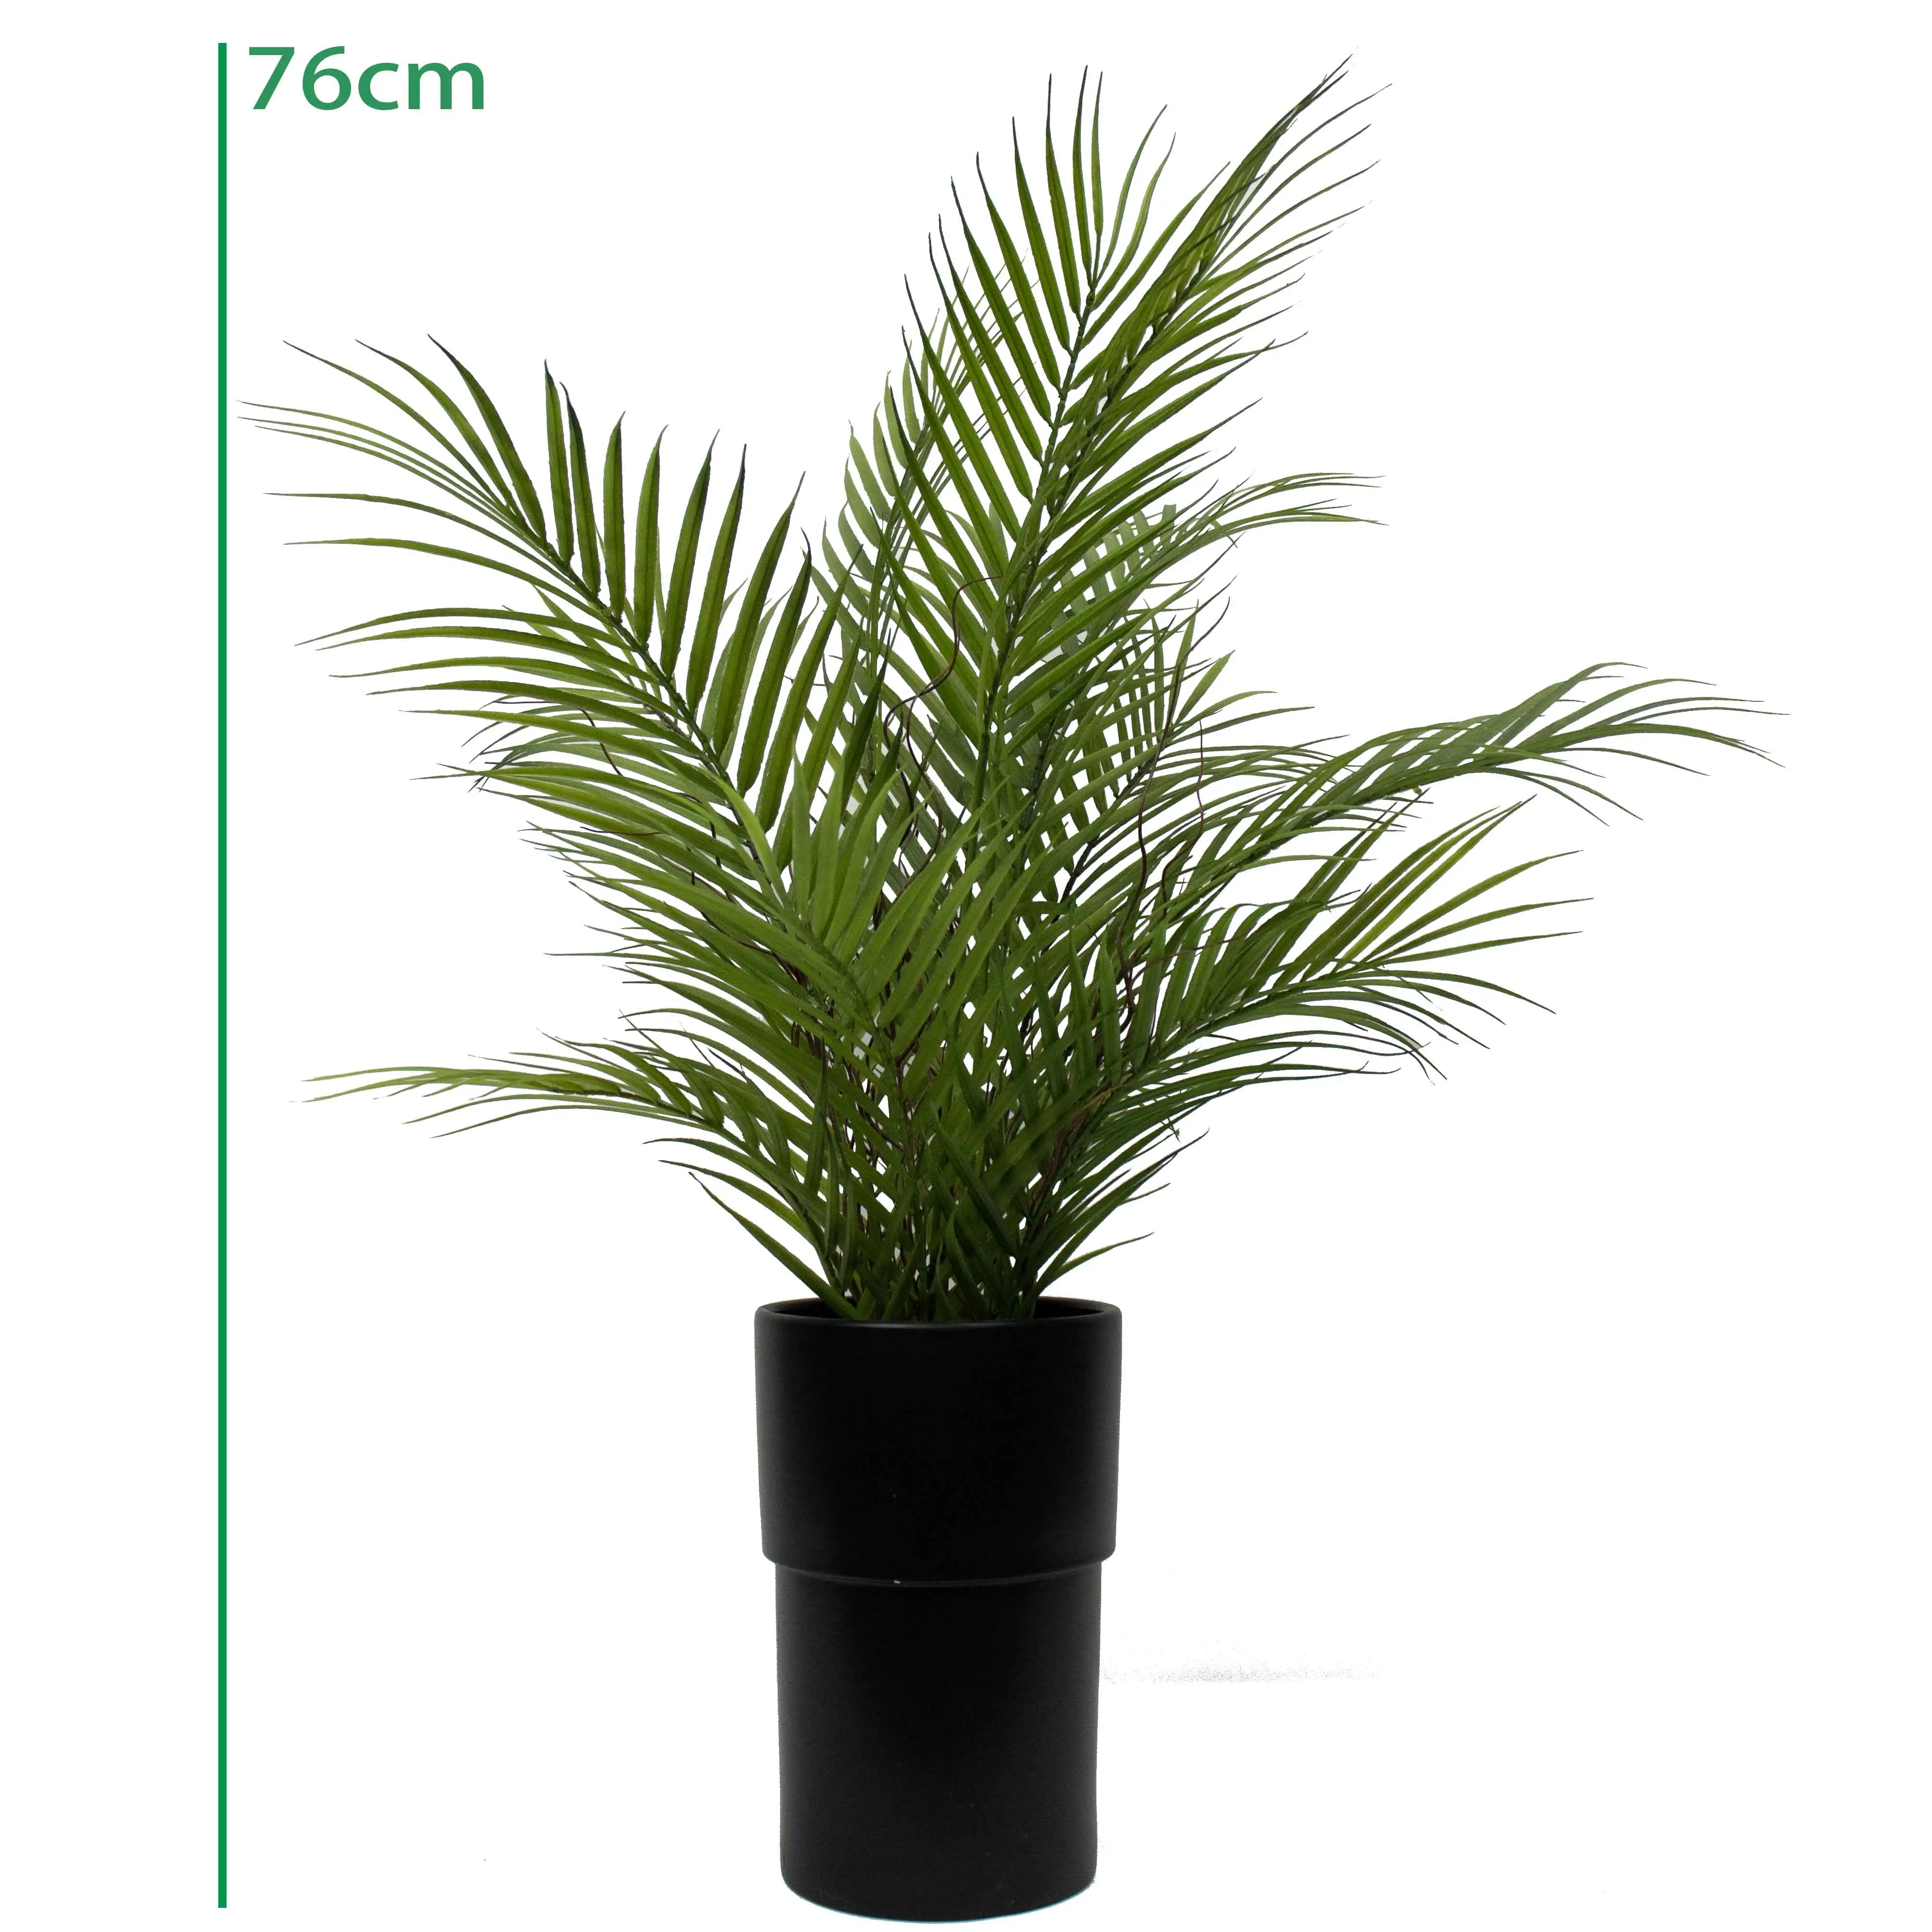 76cmリアルタッチプラスチック植物無臭庭の装飾リアルな人工シミュレートされたセラミックポットTrachycarpusフォーチュンパームツリー